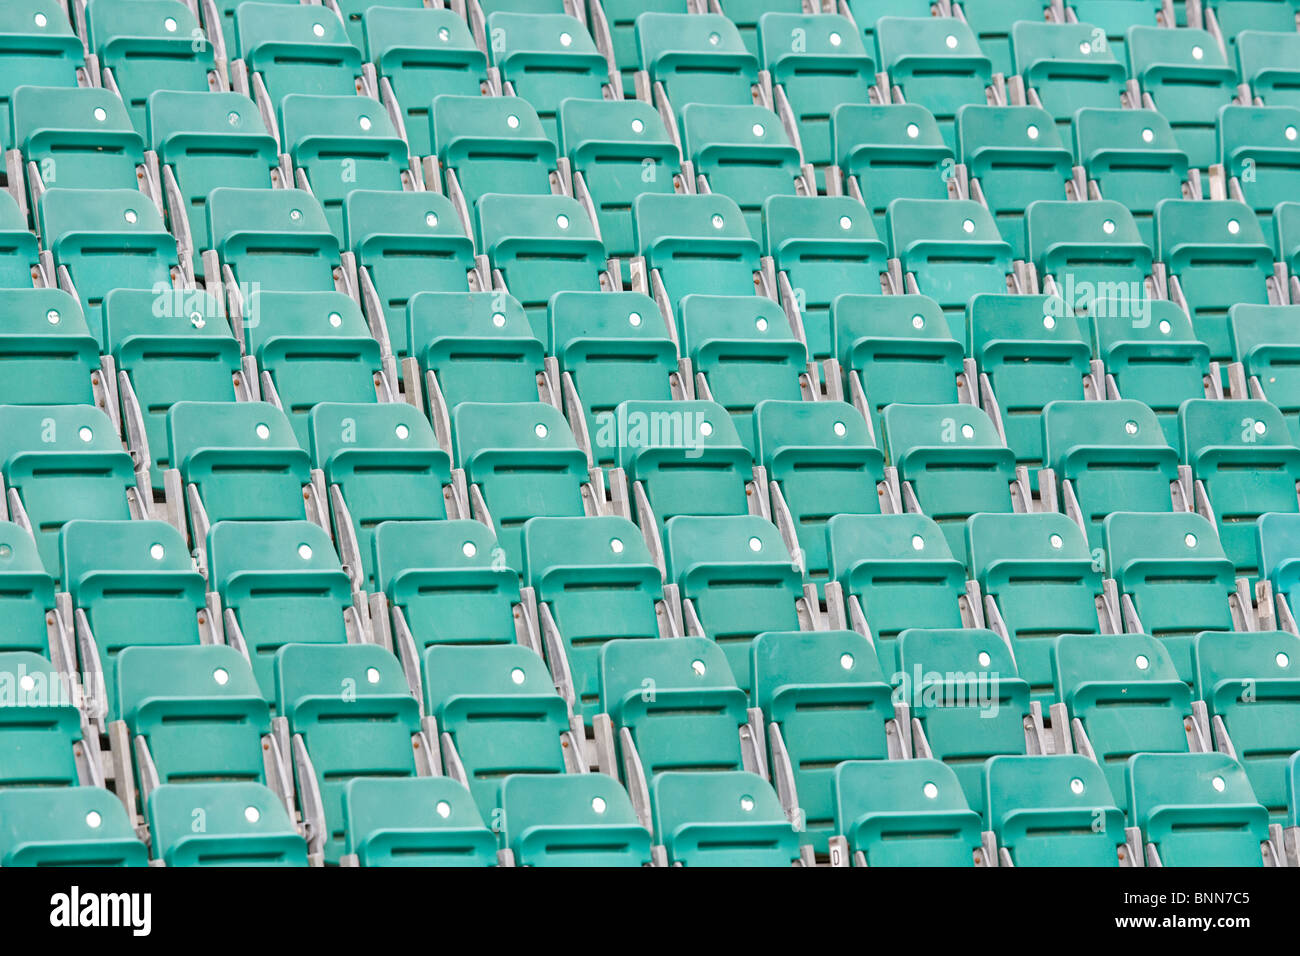 Eine leere Stand der grünen Sitze im Withean Stadion in Brighton. Bild von James Boardman Stockfoto